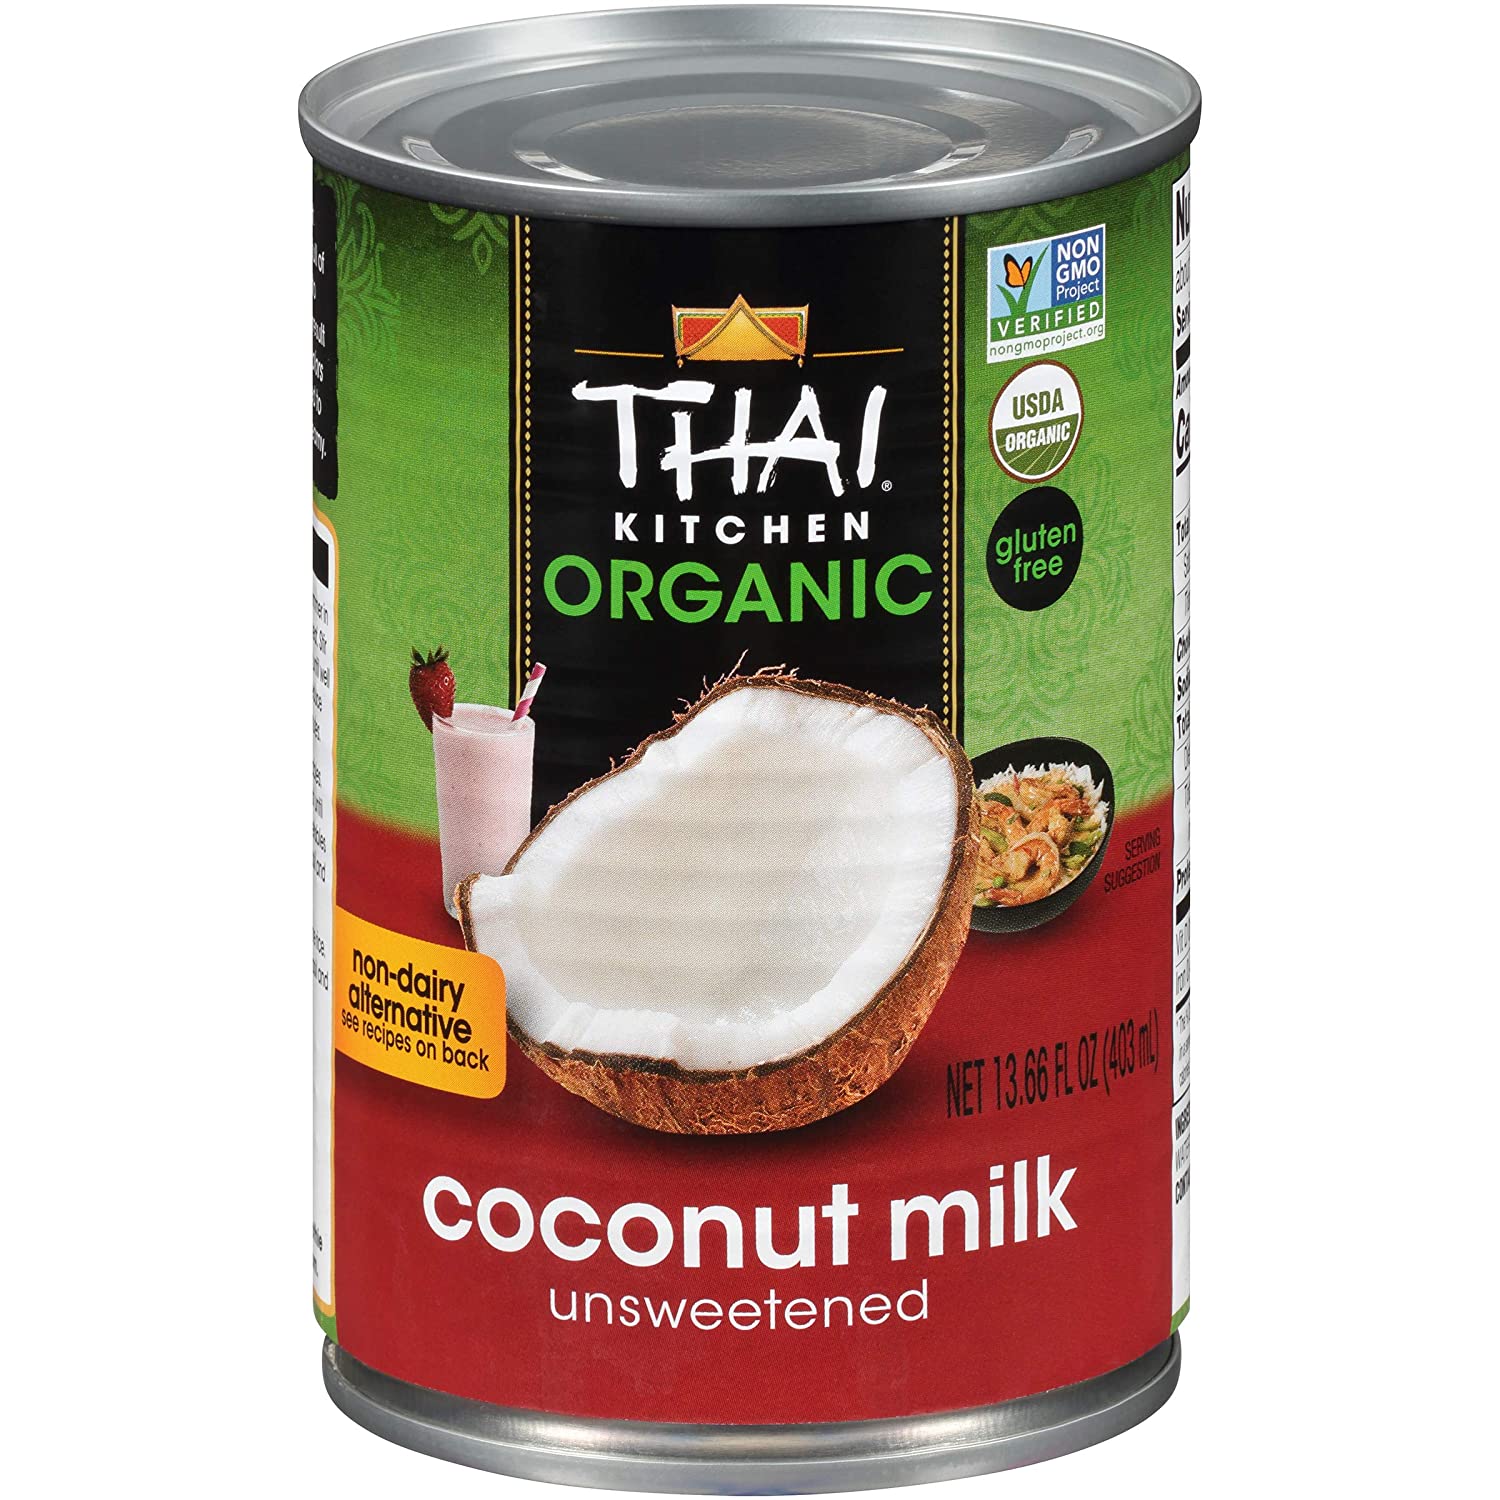 Health benefits of Coconut Milk